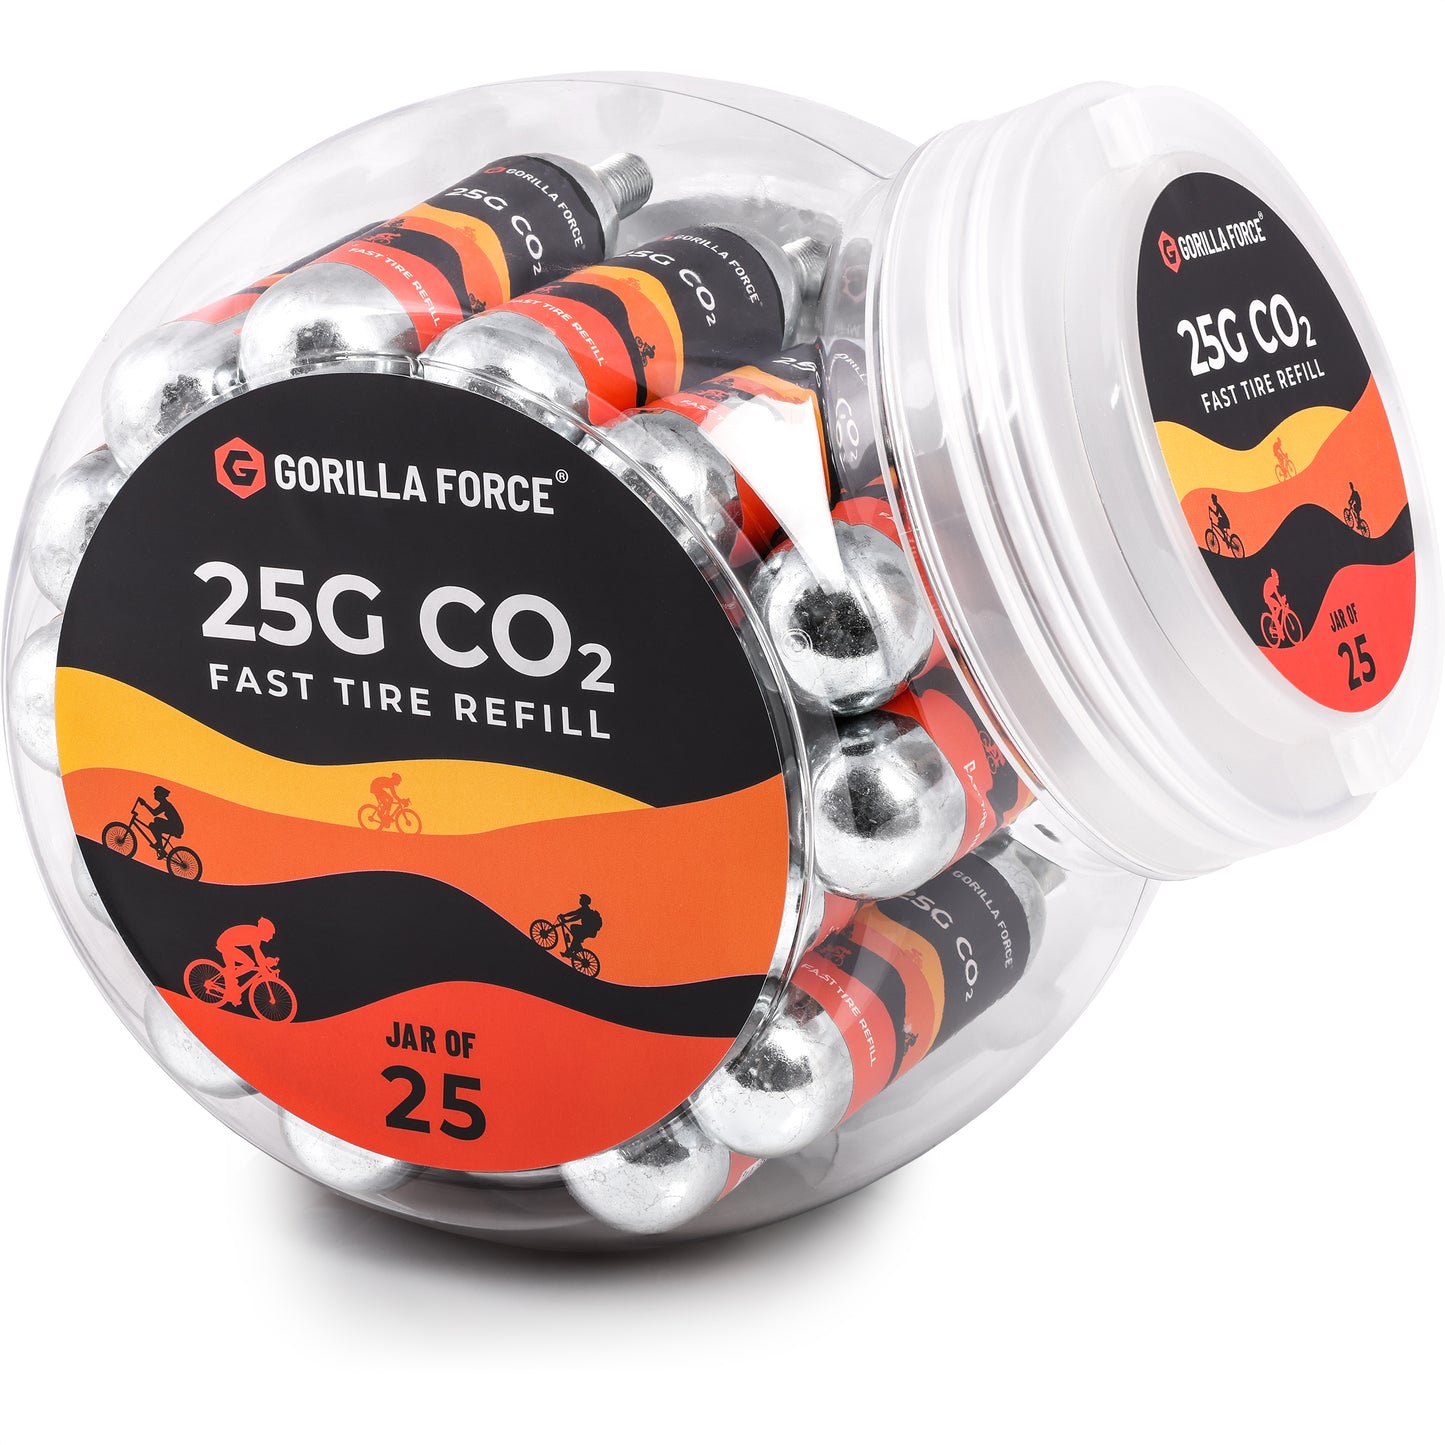 25g CO2 Cartridges